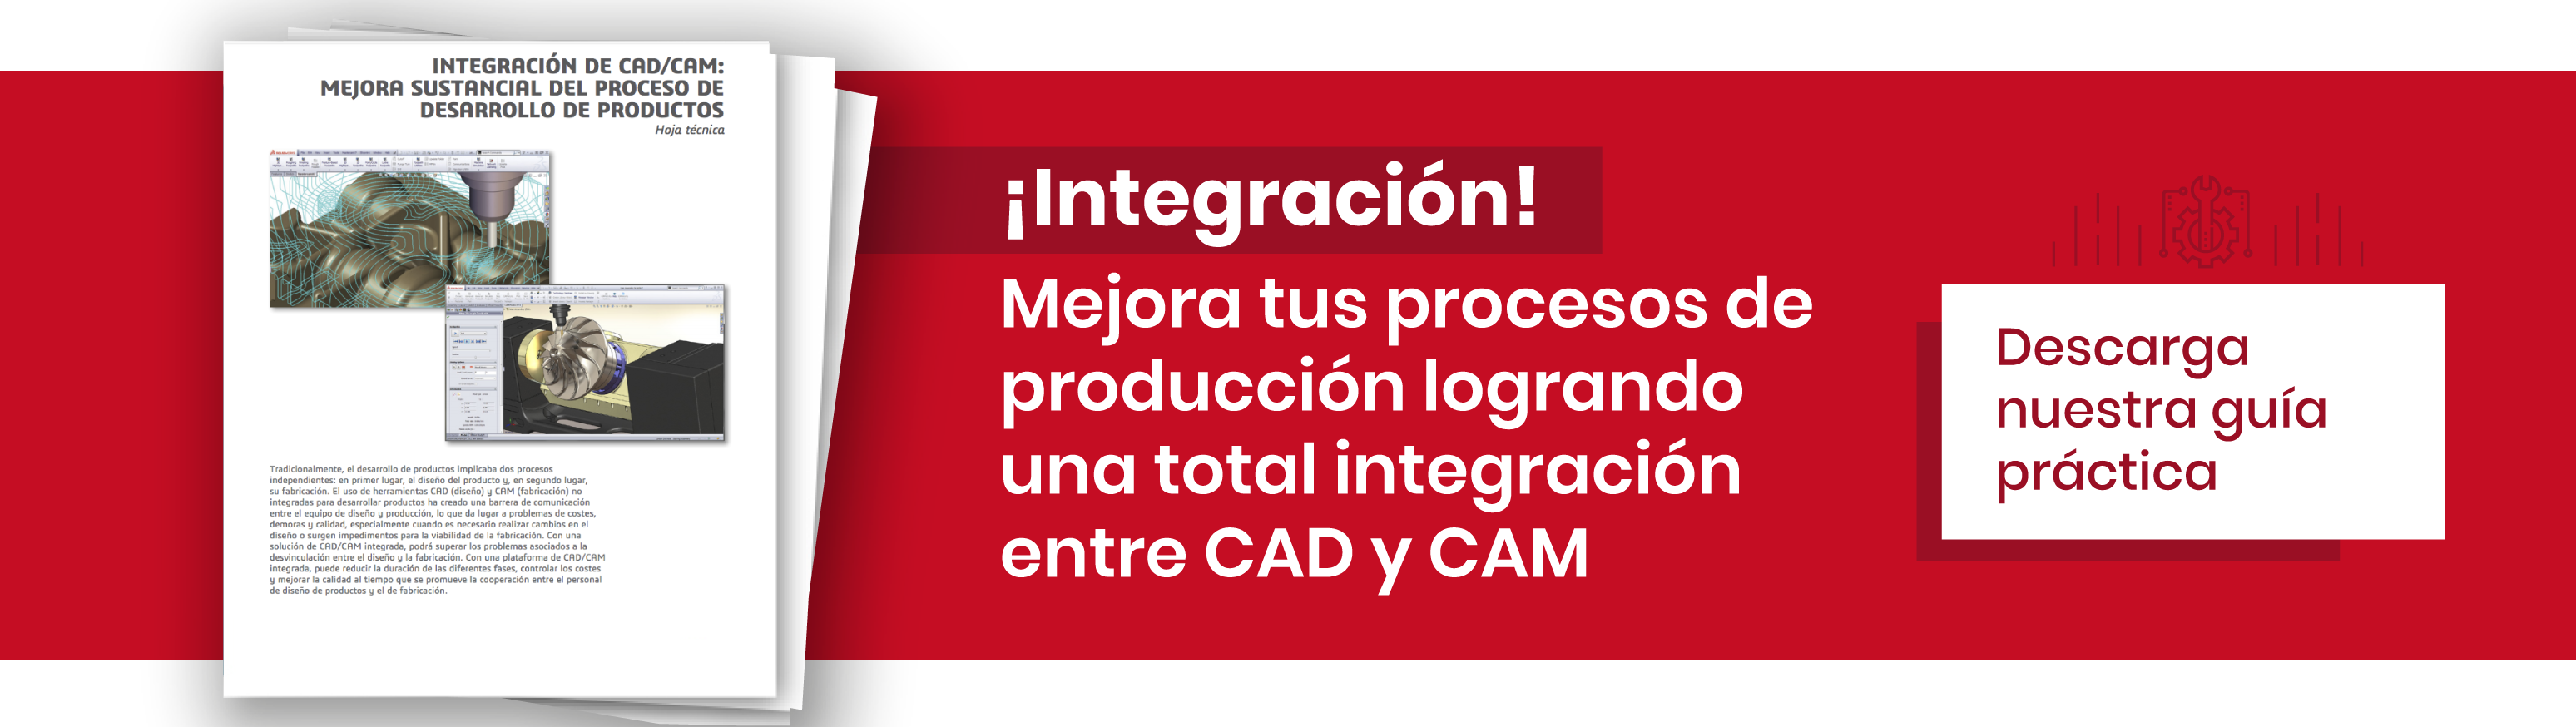 ¡Integración! Mejora tus procesos de producción logrando una total integración entre CAD y CAM